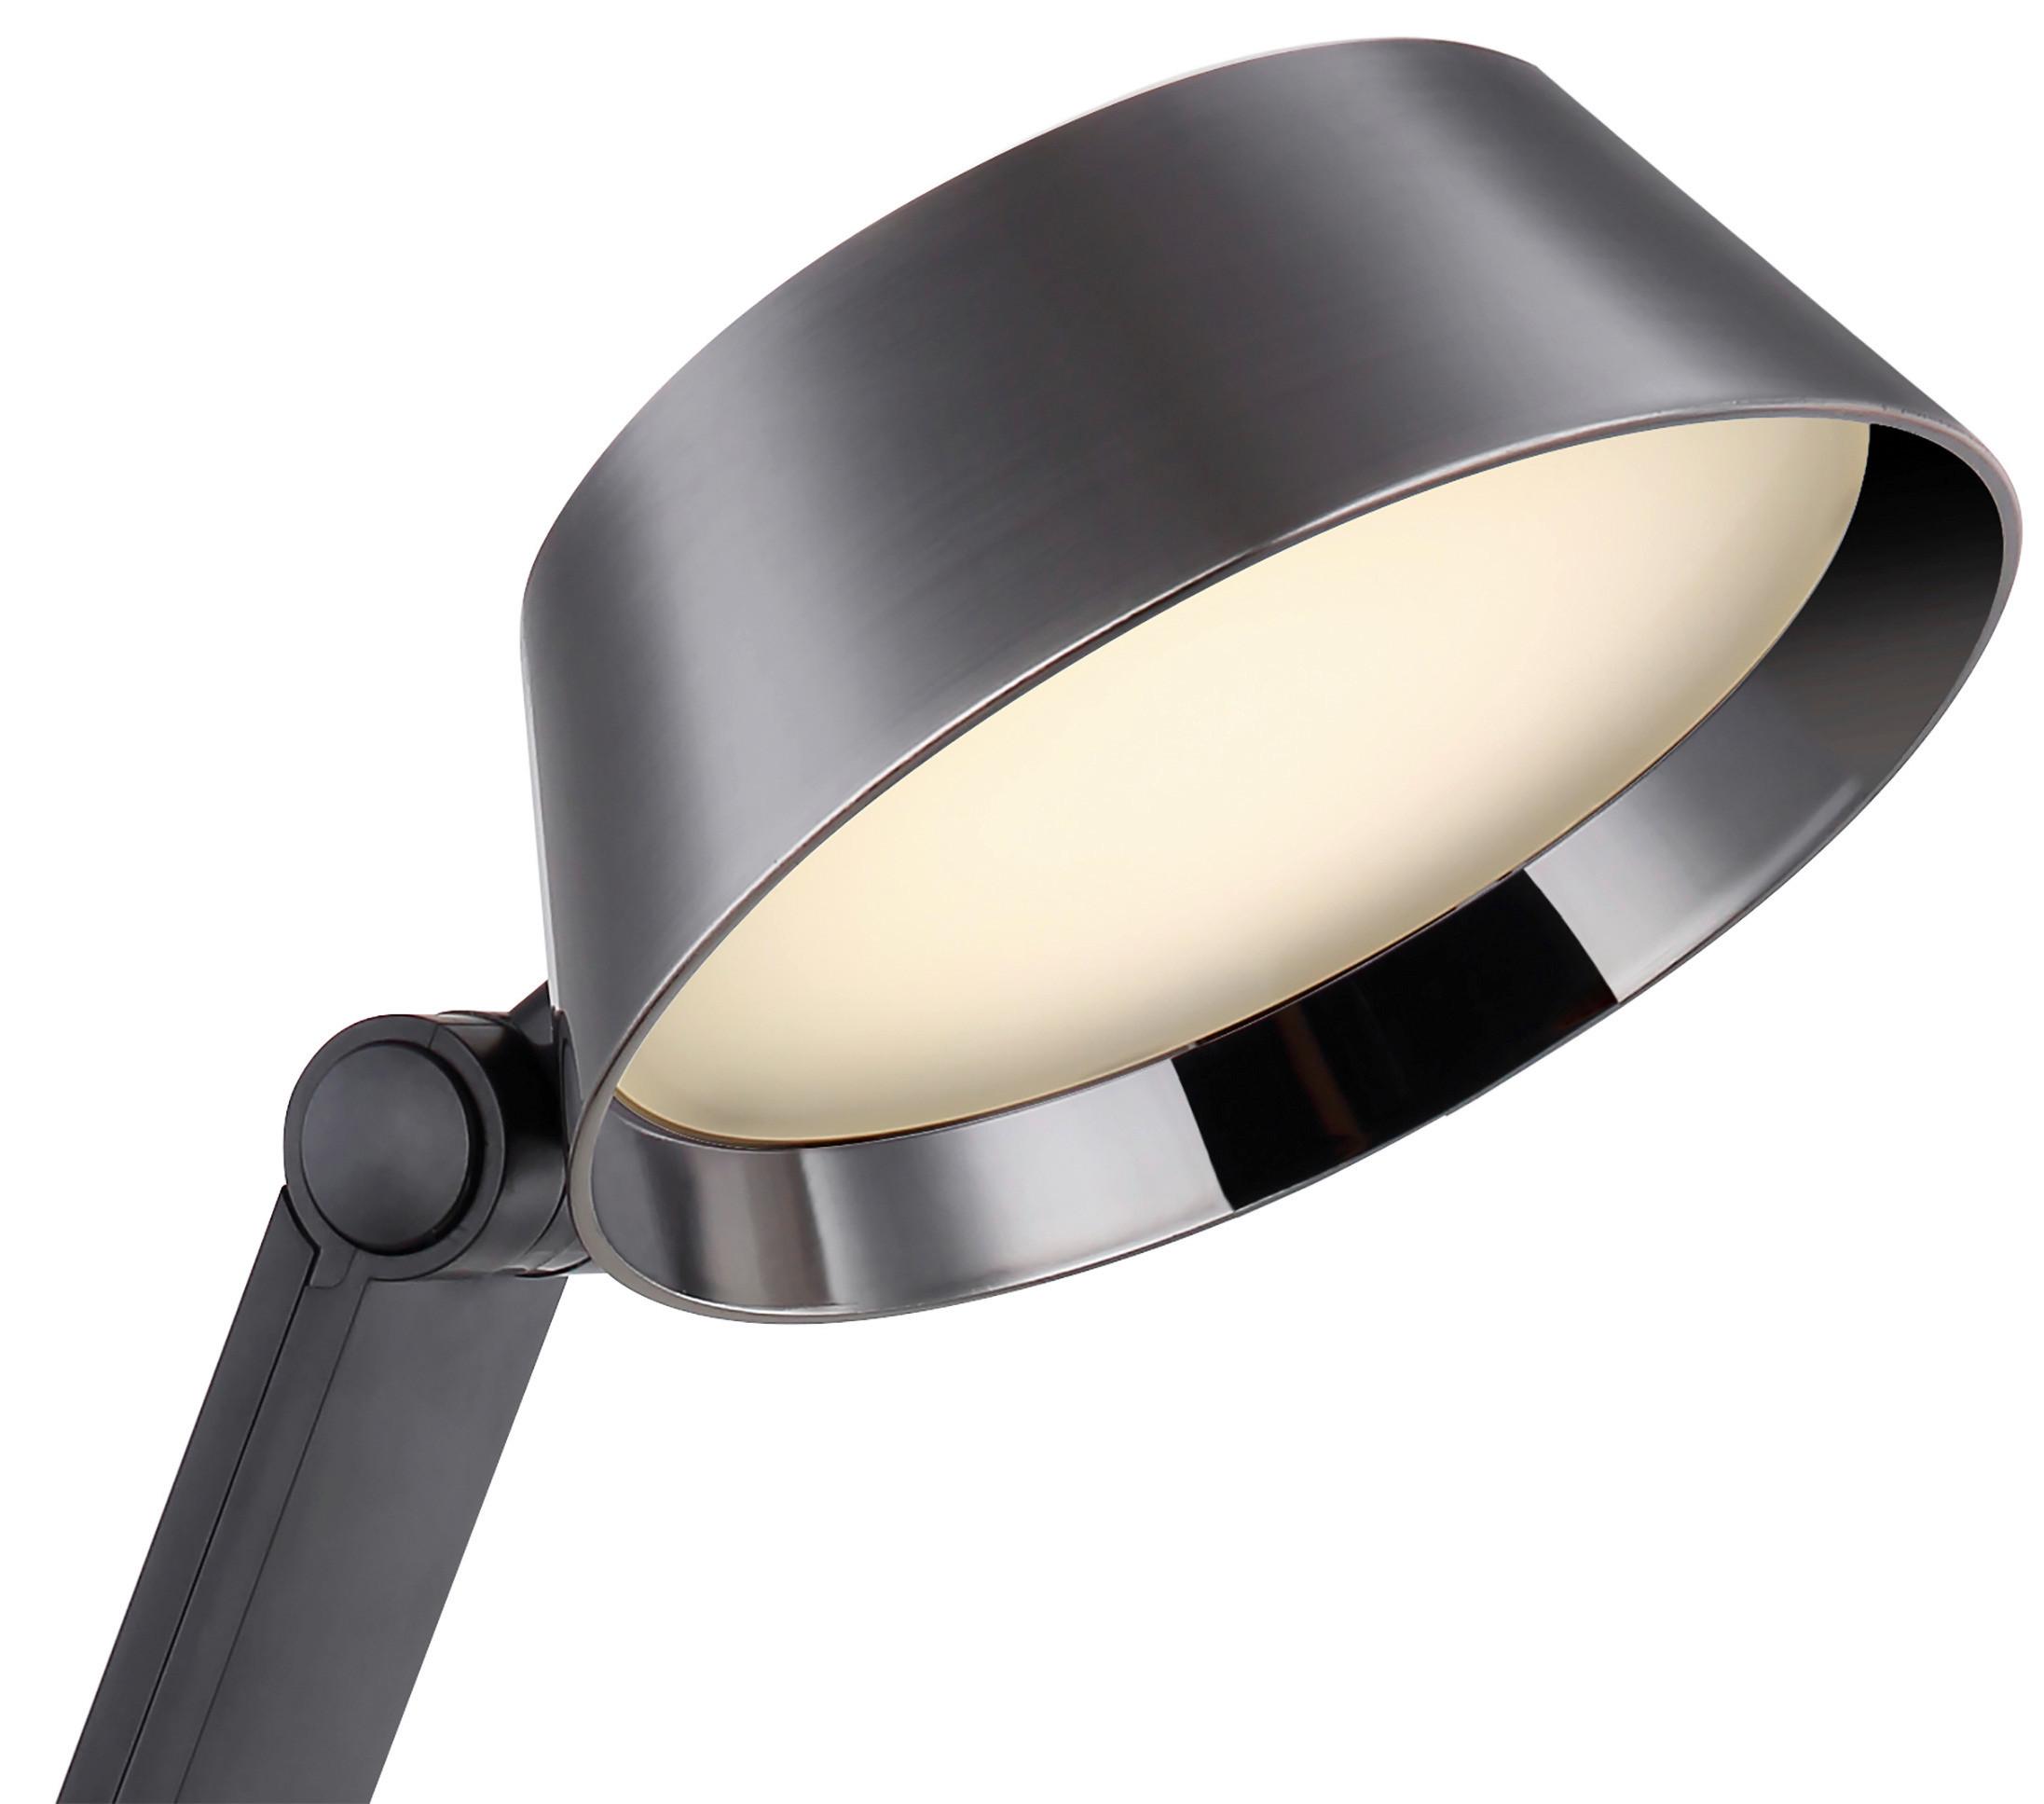 LED-Schreibtischlampe Ursino dimmbar Schwarz - Schwarz, Design, Kunststoff/Metall (48/17/51,5cm) - Globo